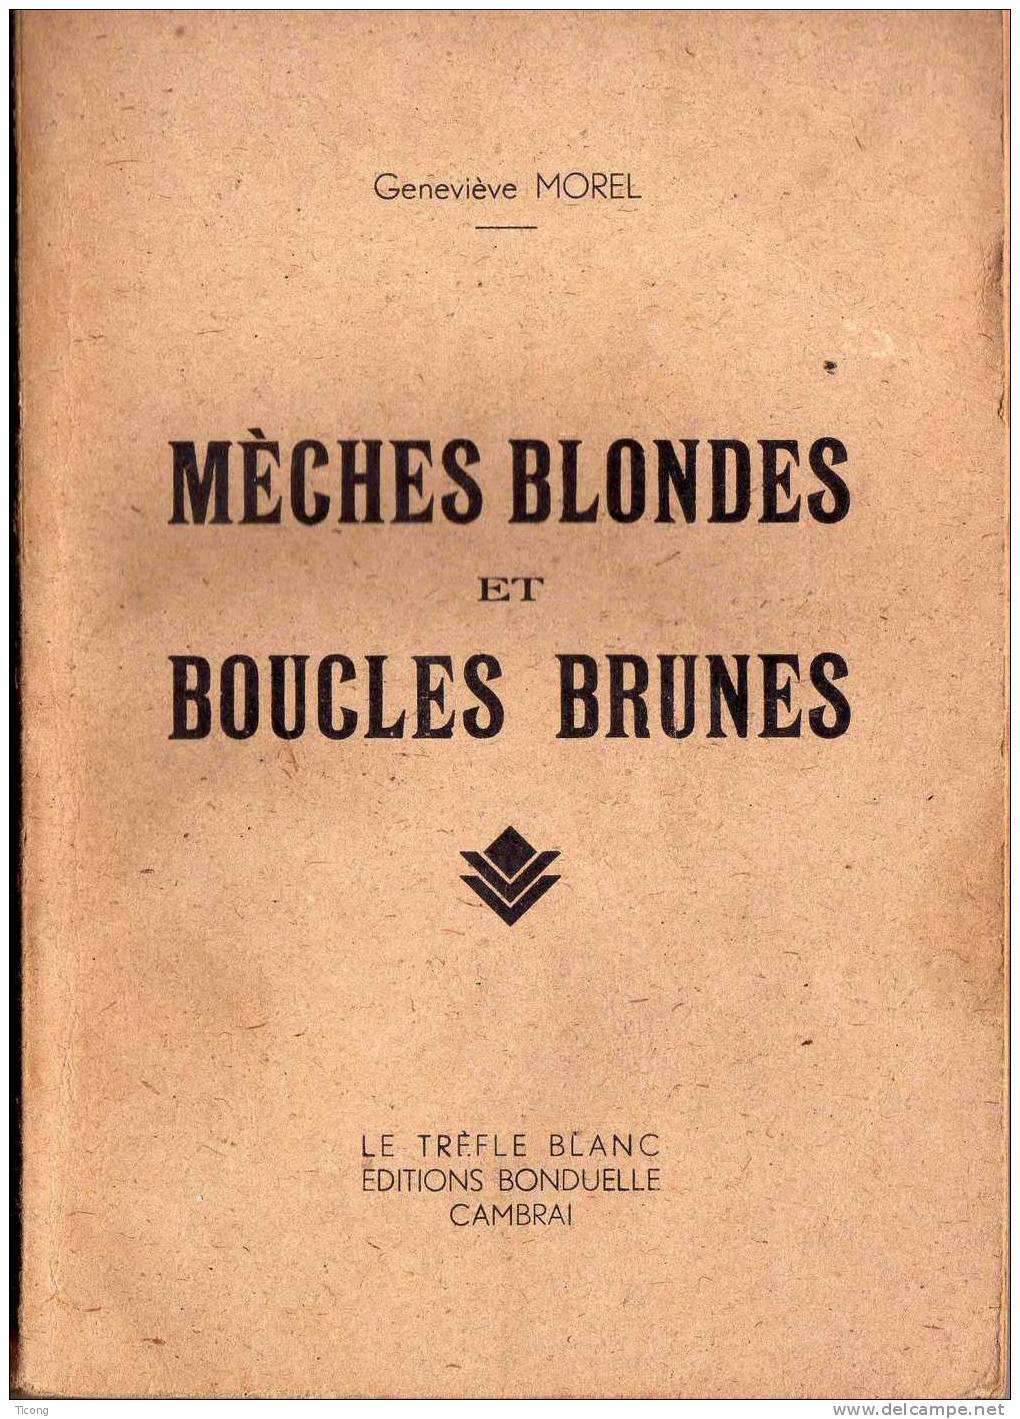 MECHES BLONDES ET BOUCLES BRUNES, GENEVIEVE  MOREL   - 1ERE EDITION 1944  - LE TREFLE BLANC EDITIONS BONDUELLE CAMBRAI - Scouting